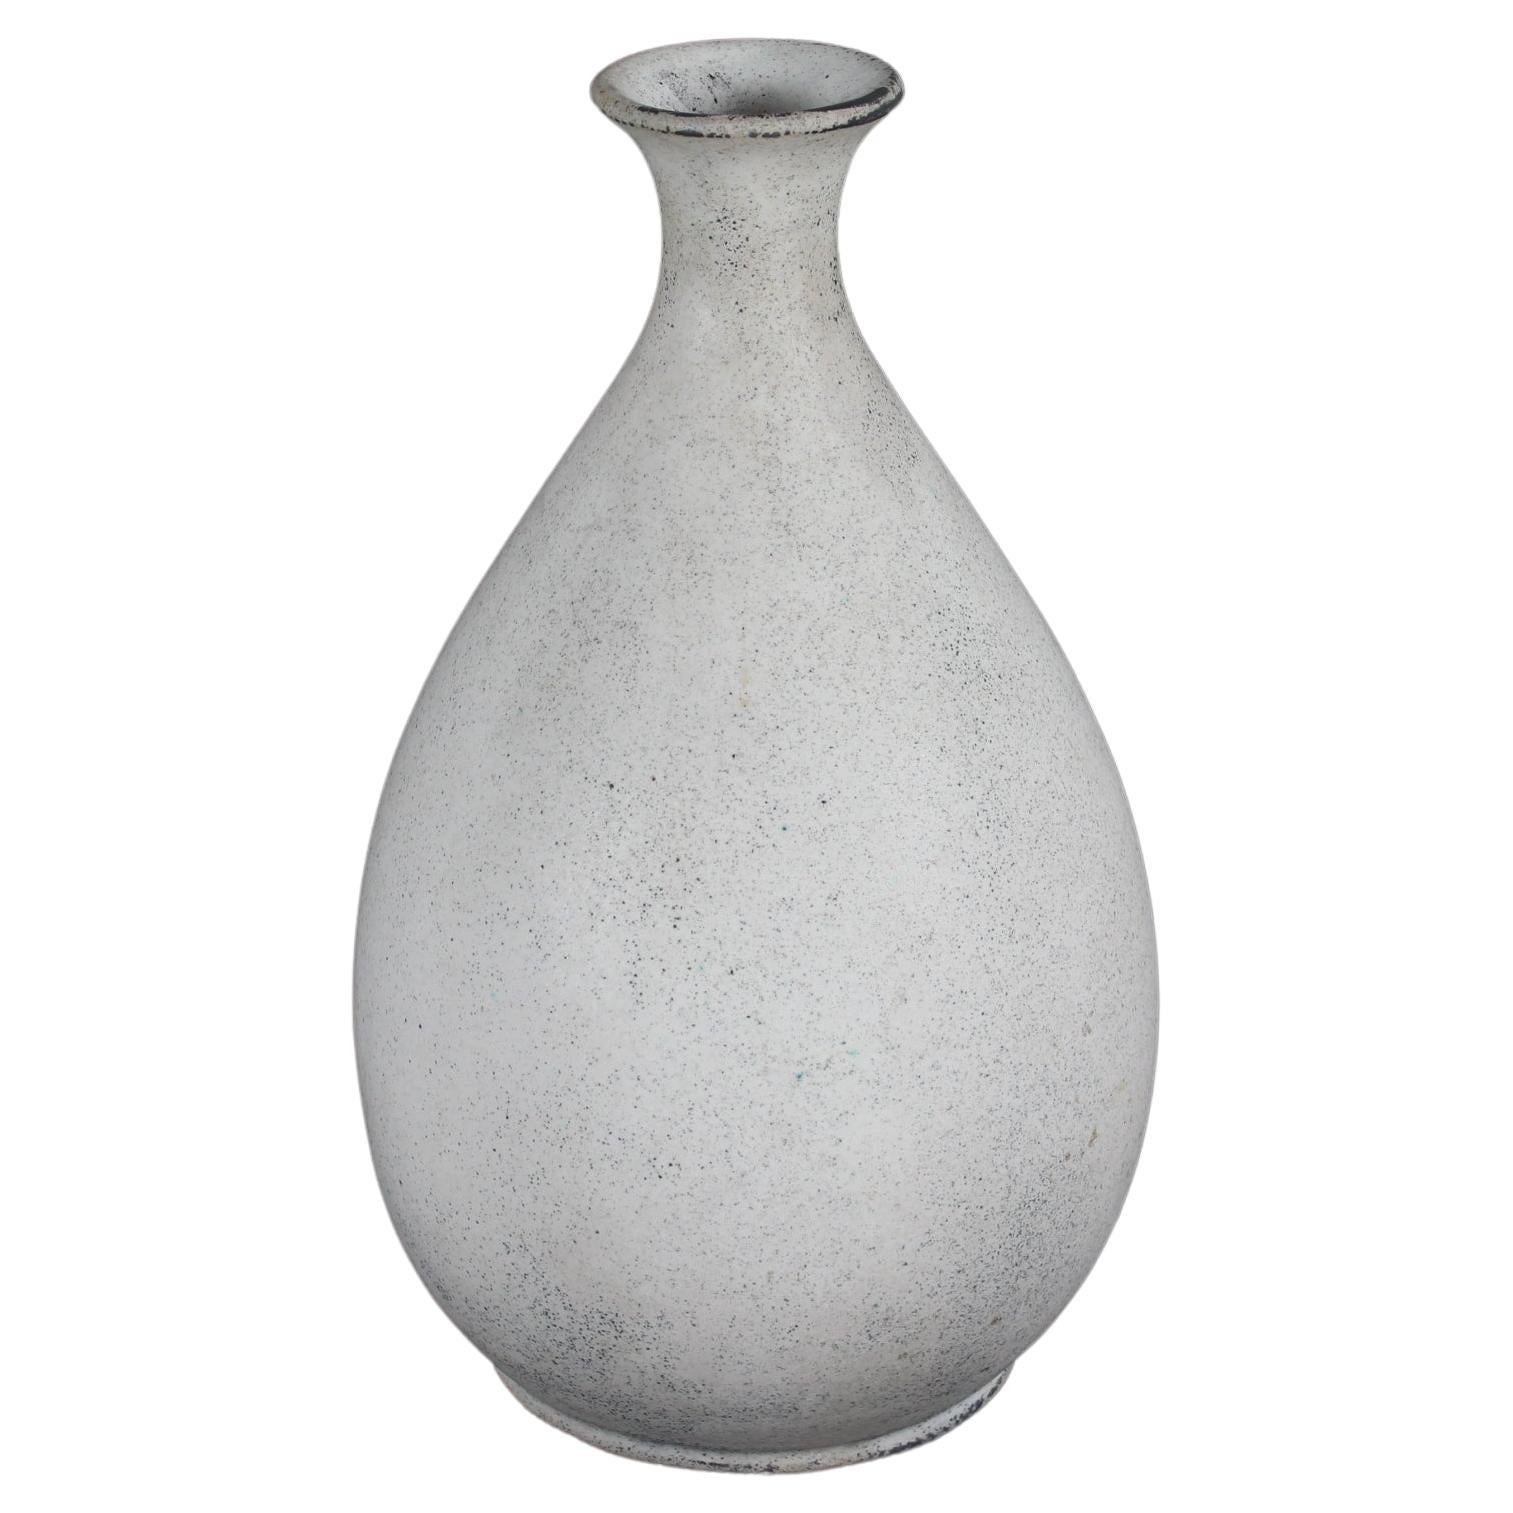 Nils Kähler Baluster Shaped Vase with Matte Ash Grey Glaze, HAK, Denmark, 1940s